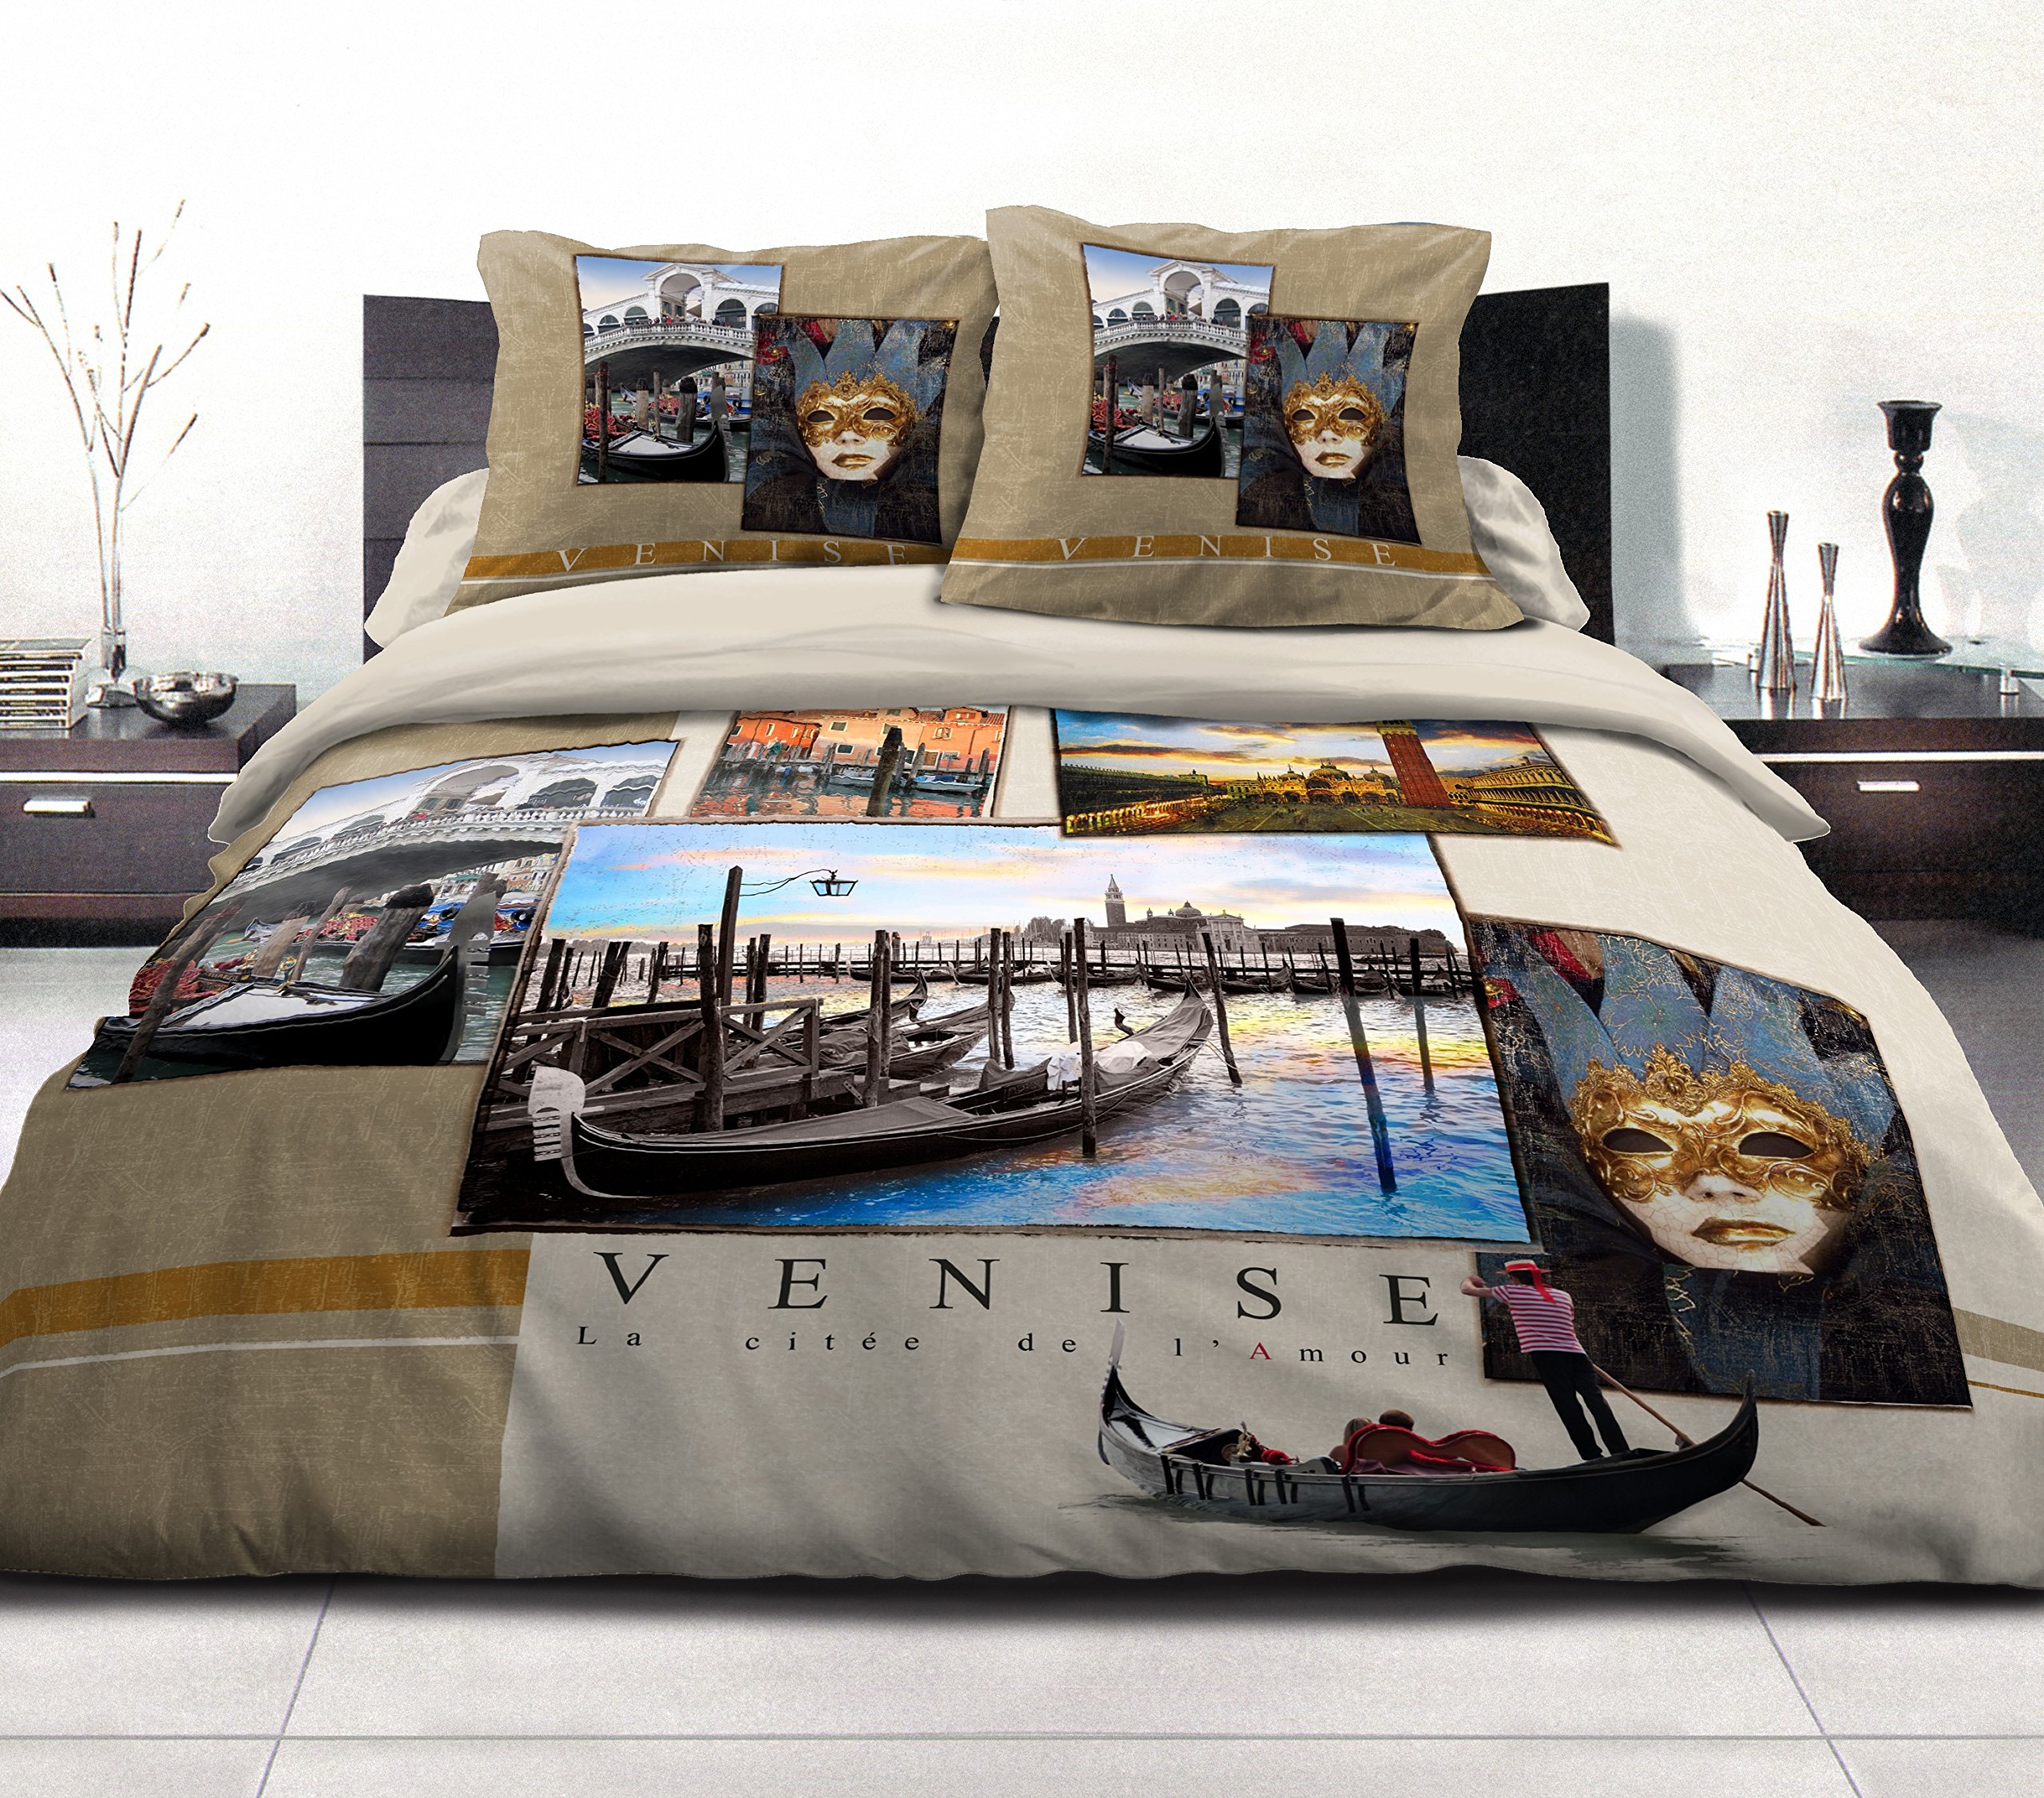 Home Passion Bettbezug – 3-teilig | 100% Baumwolle – 57 Fäden | Doppelbett – 220 x 240 cm Sand Bettwäsche Dream in Venedig, Venise Zobel, 220x240 cm, 3